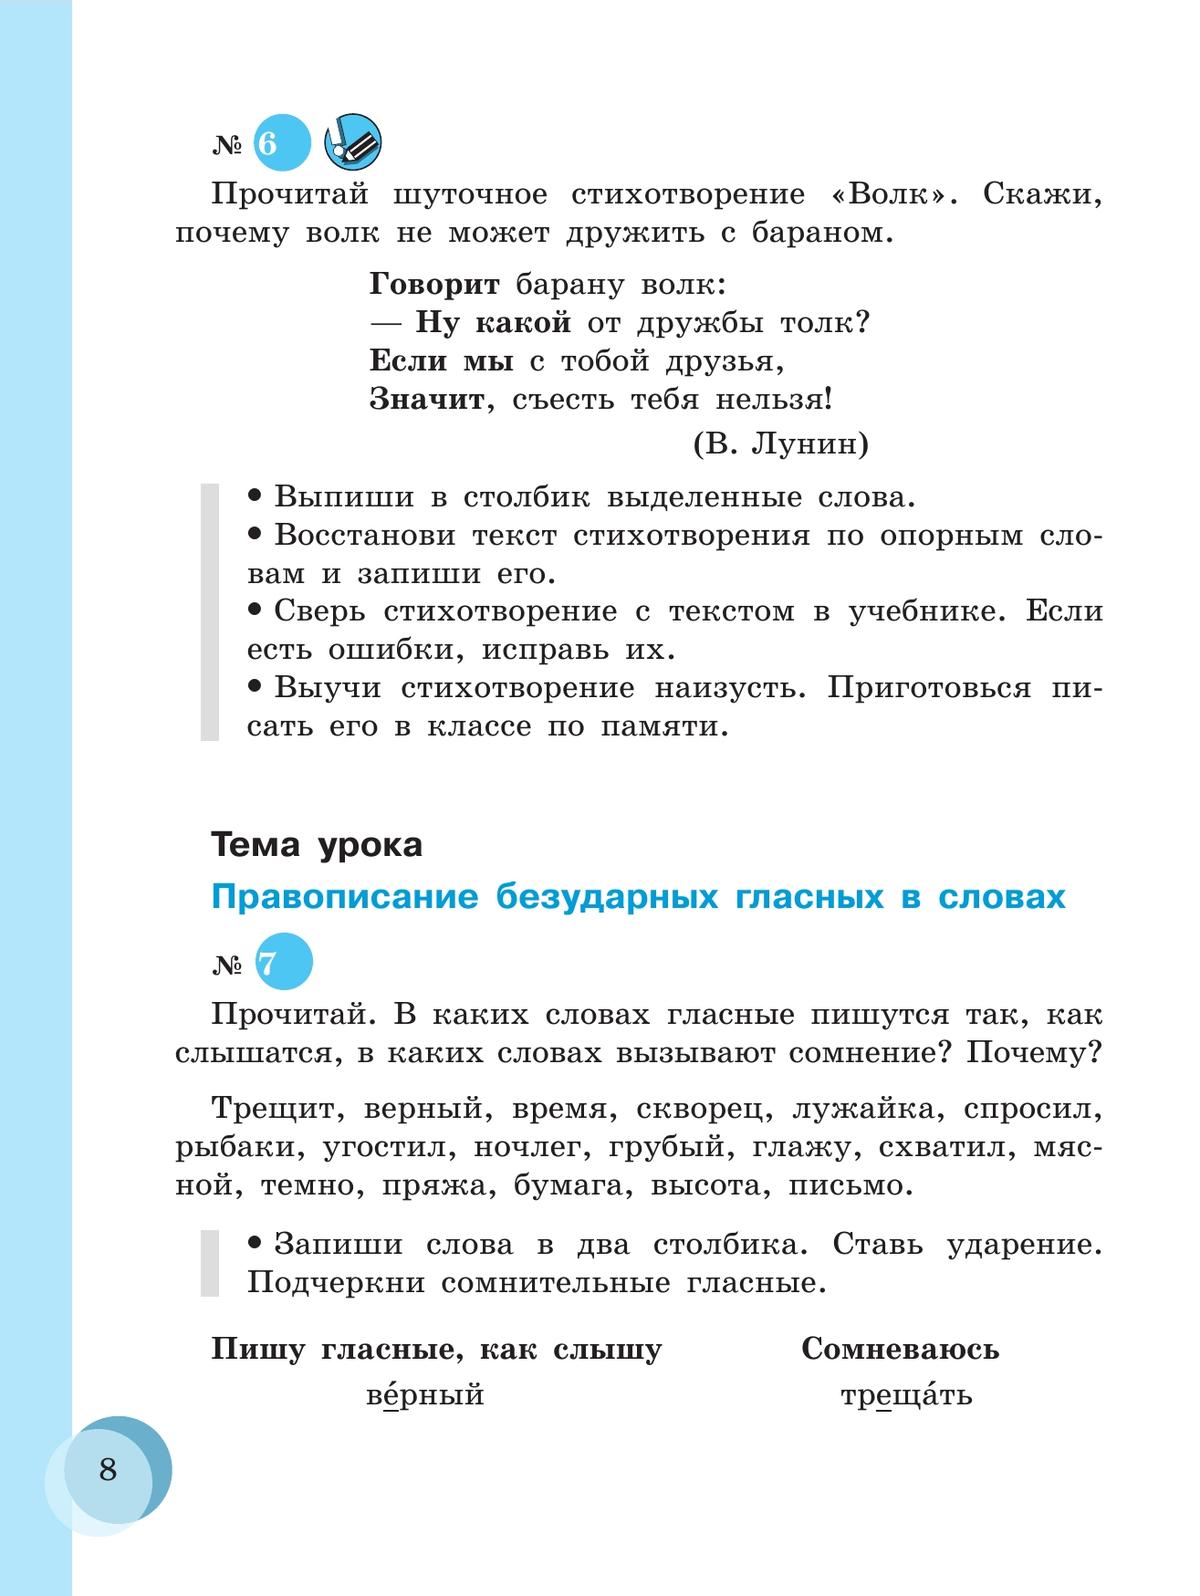 Русский язык. 7 класс. Учебник (для обучающихся с интеллектуальными нарушениями) 9